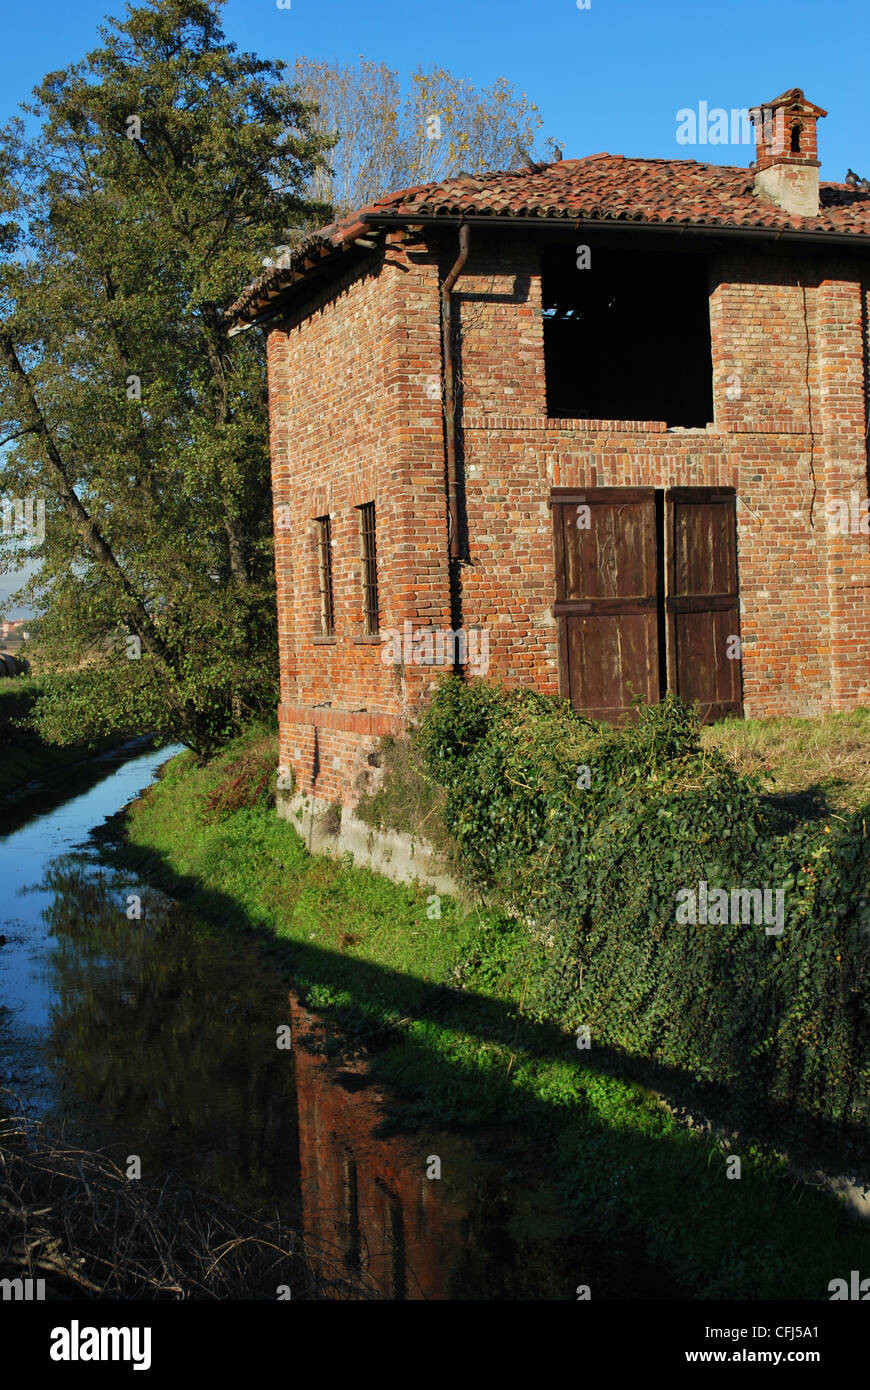 Vecchio abbandonato county house su un canale in una giornata di sole, Italia Foto Stock